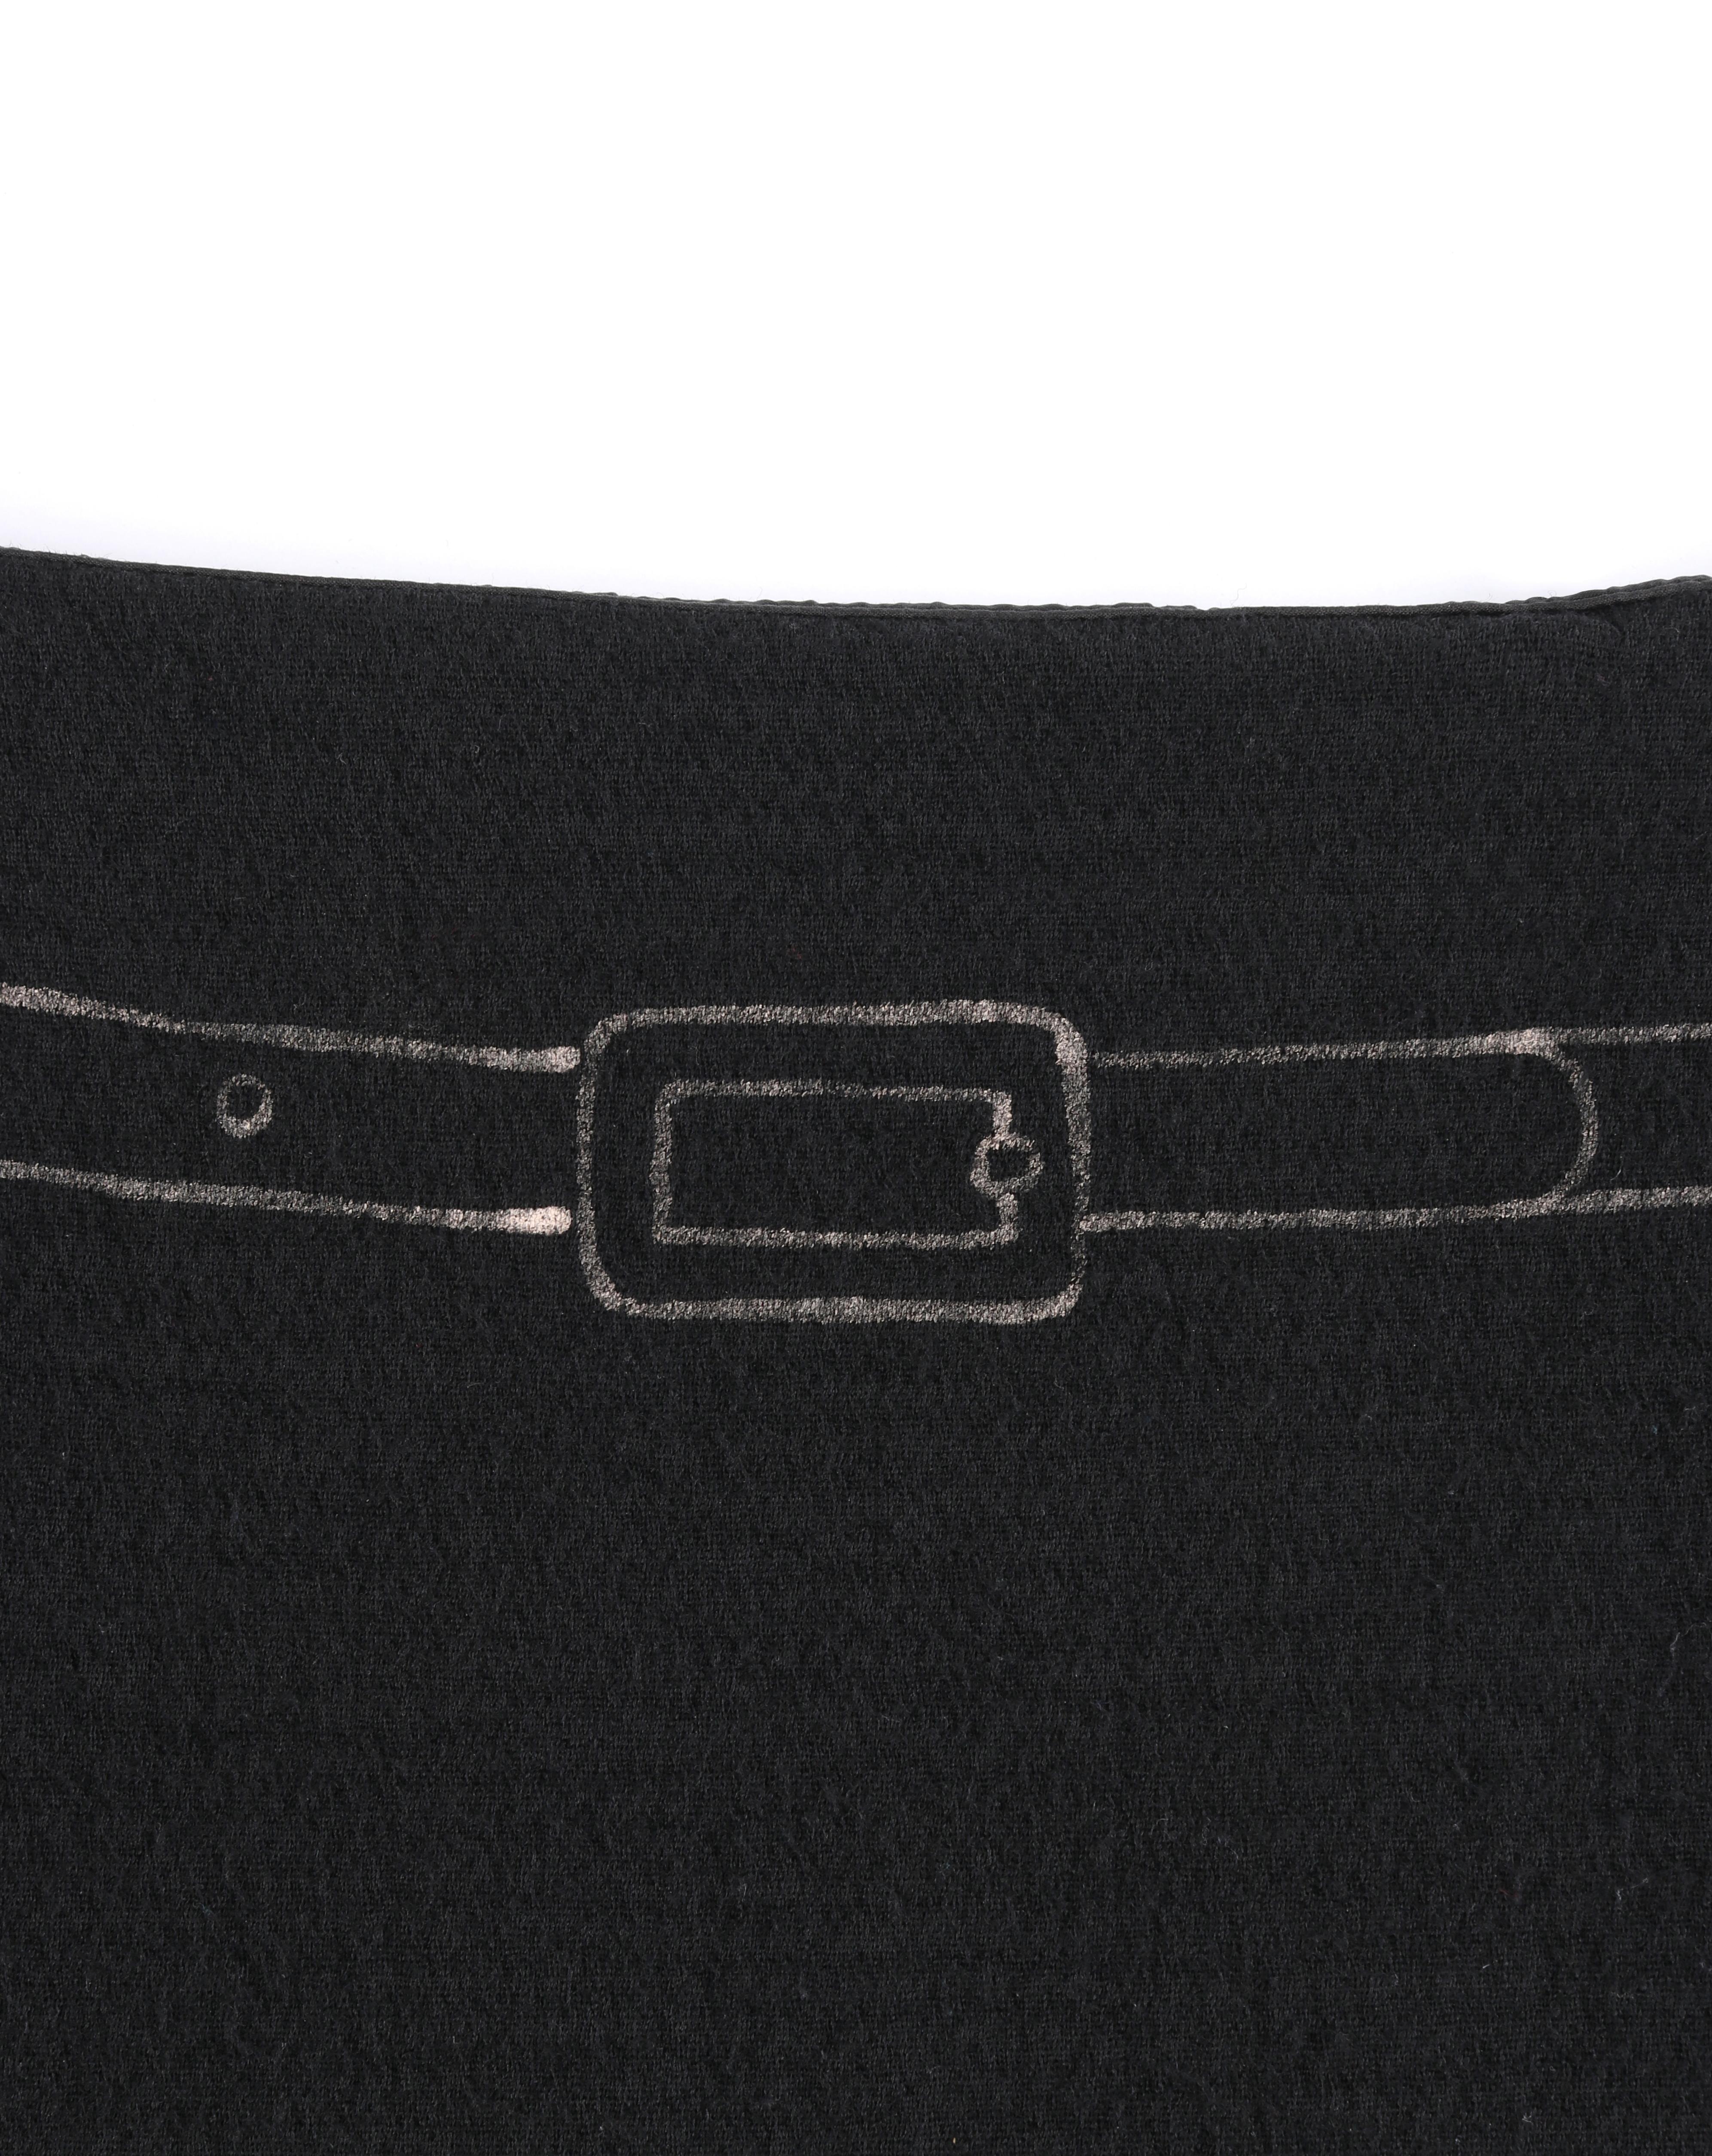 MOSCHINO c. 1990’s Trompe L’oeil Black Metallic Belt Pleated Print Sheath Skirt 2